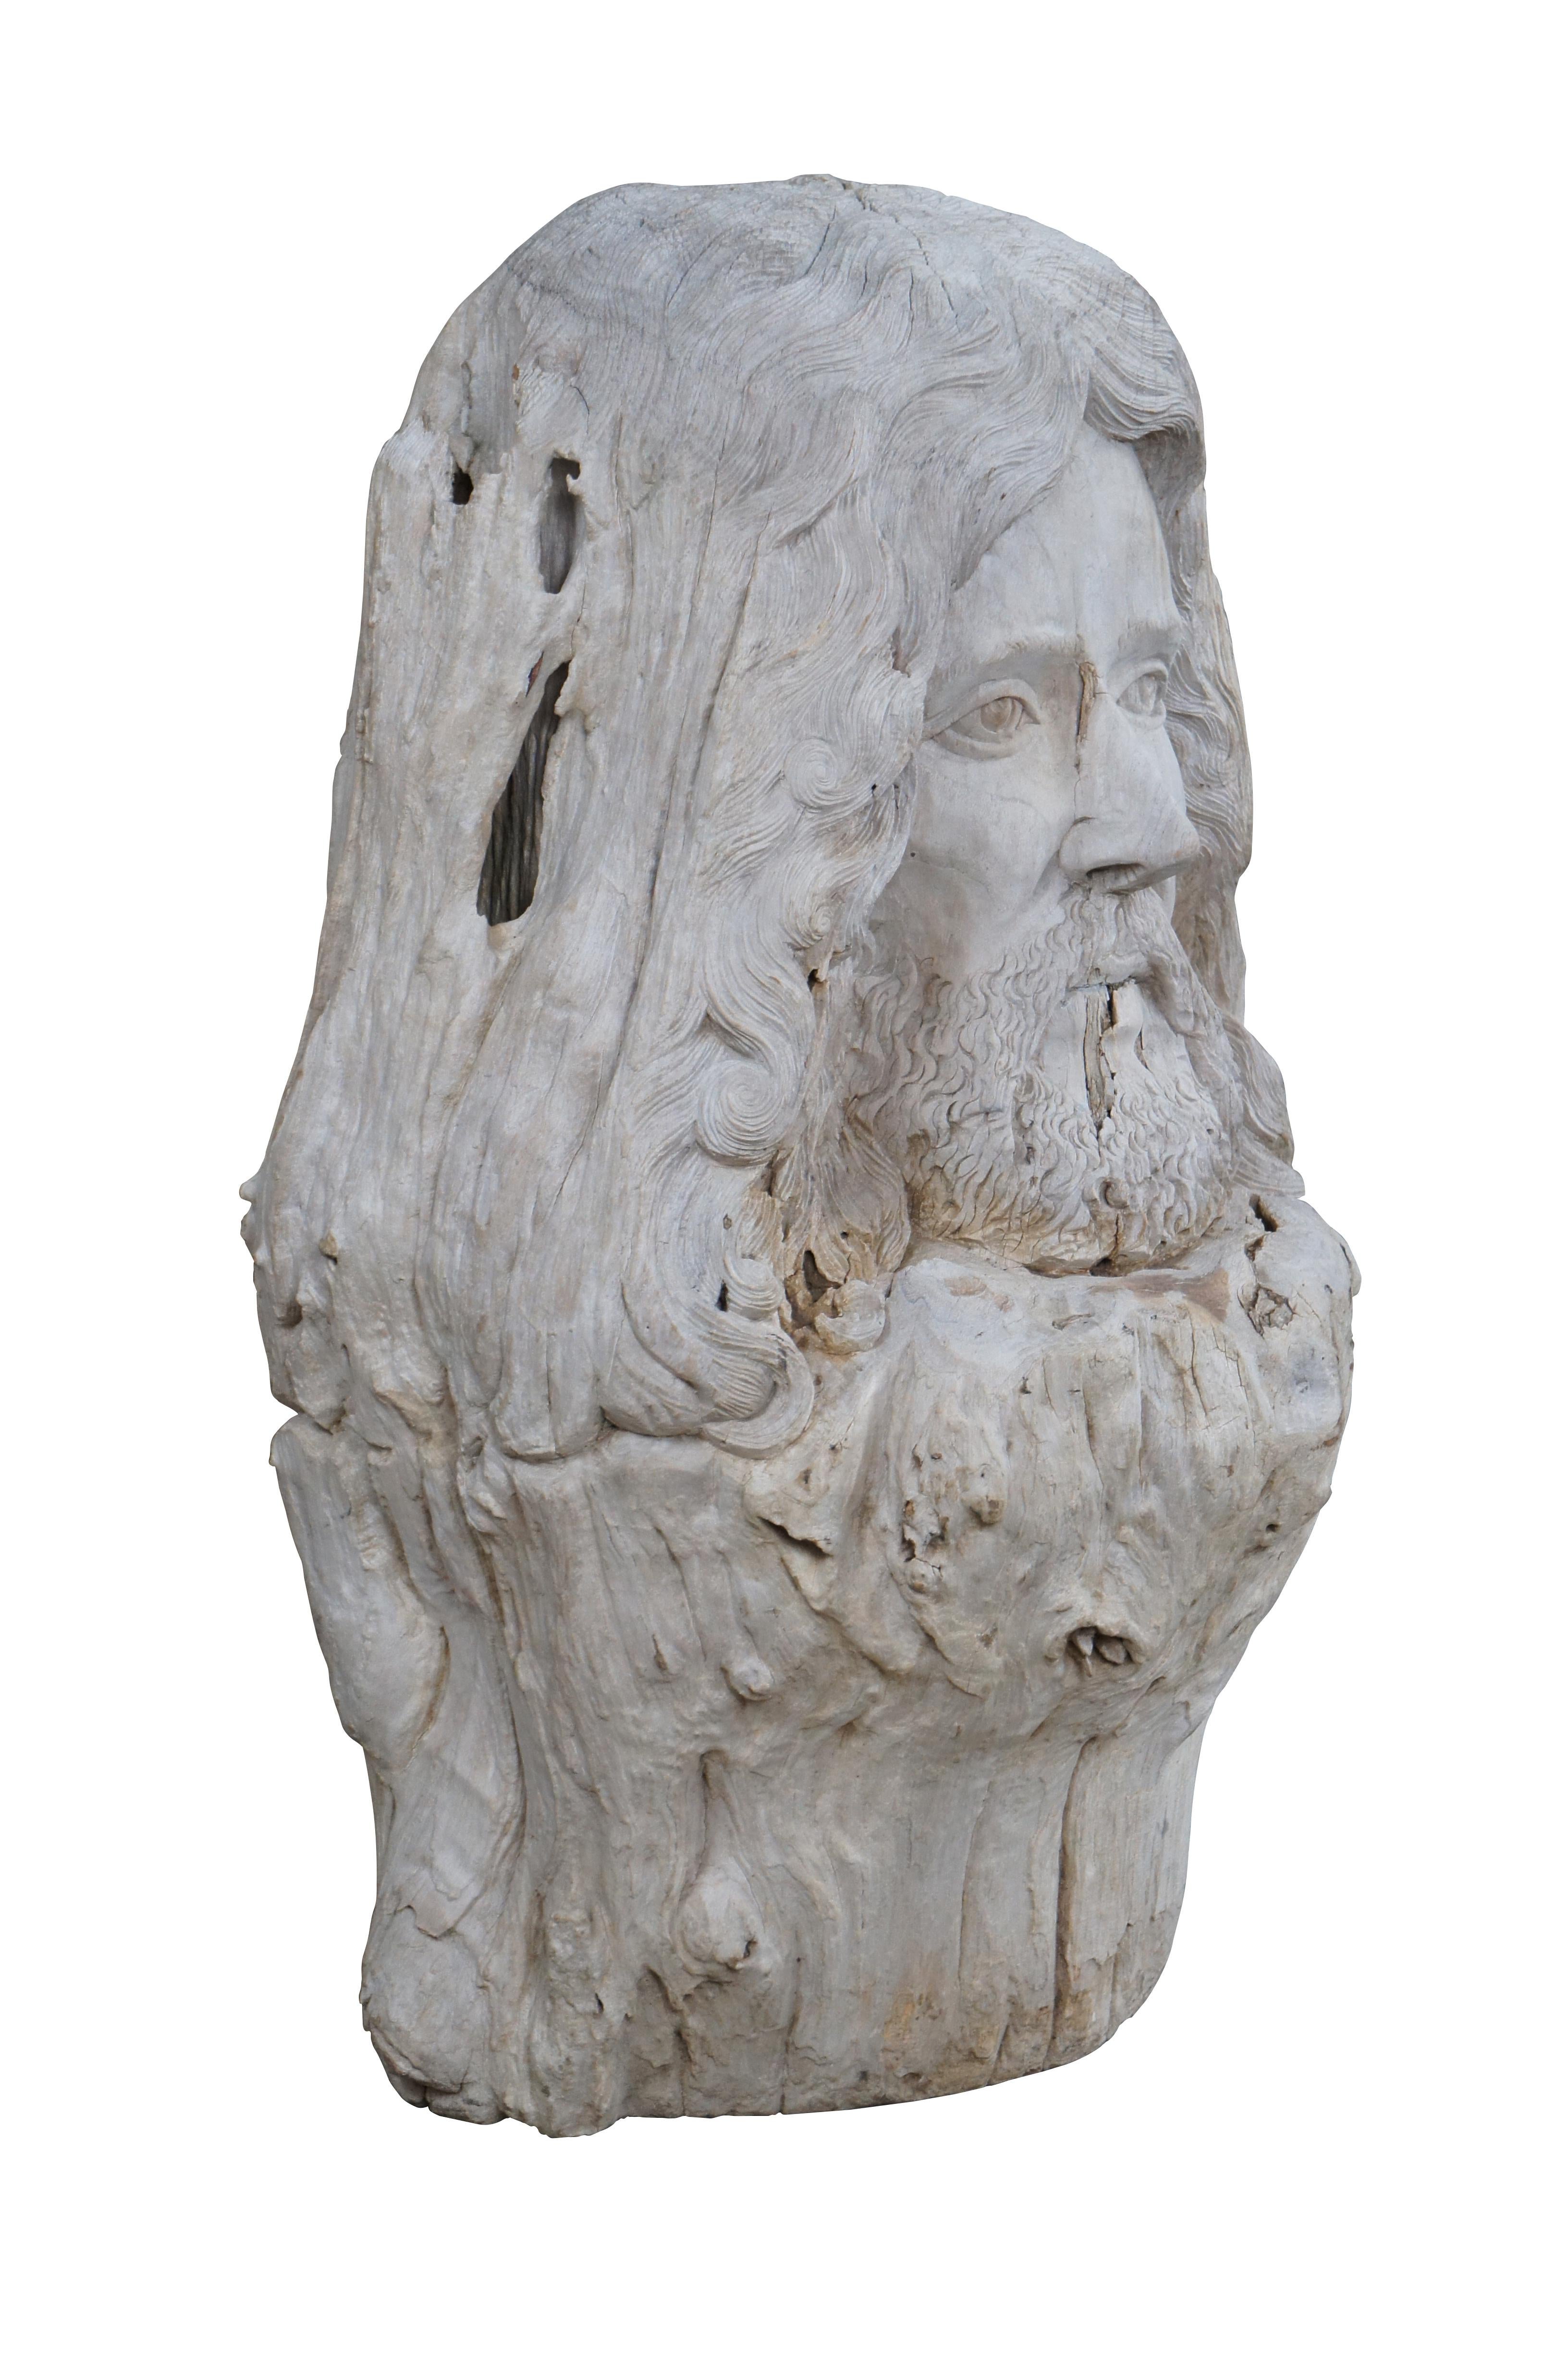 Eine große Treibholzschnitzerei von Zues. Handgeschnitzt mit natürlichen Details aus einem sehr schweren Stück Treibholz.

In der altgriechischen Mythologie ist Zeus der Gott des Himmels, des Donners und des Blitzes. Er ist auch der König der Götter